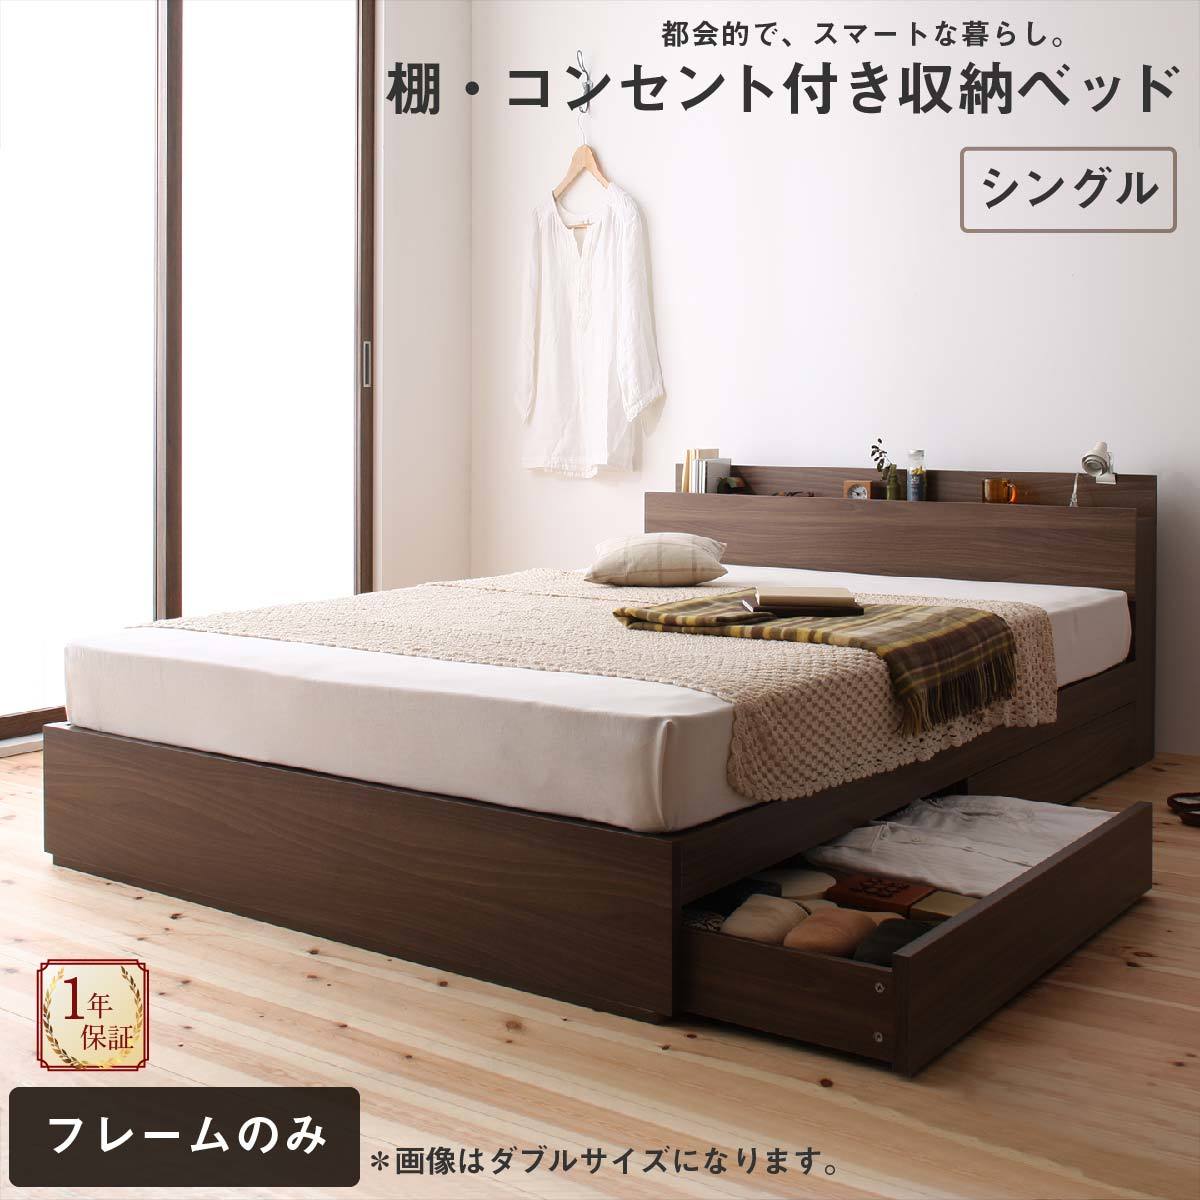 ロングセラー 人気 収納付き 木製ベッド コンセント付き 収納ベッド 引き出し付きベッド ウォルナットブラウン